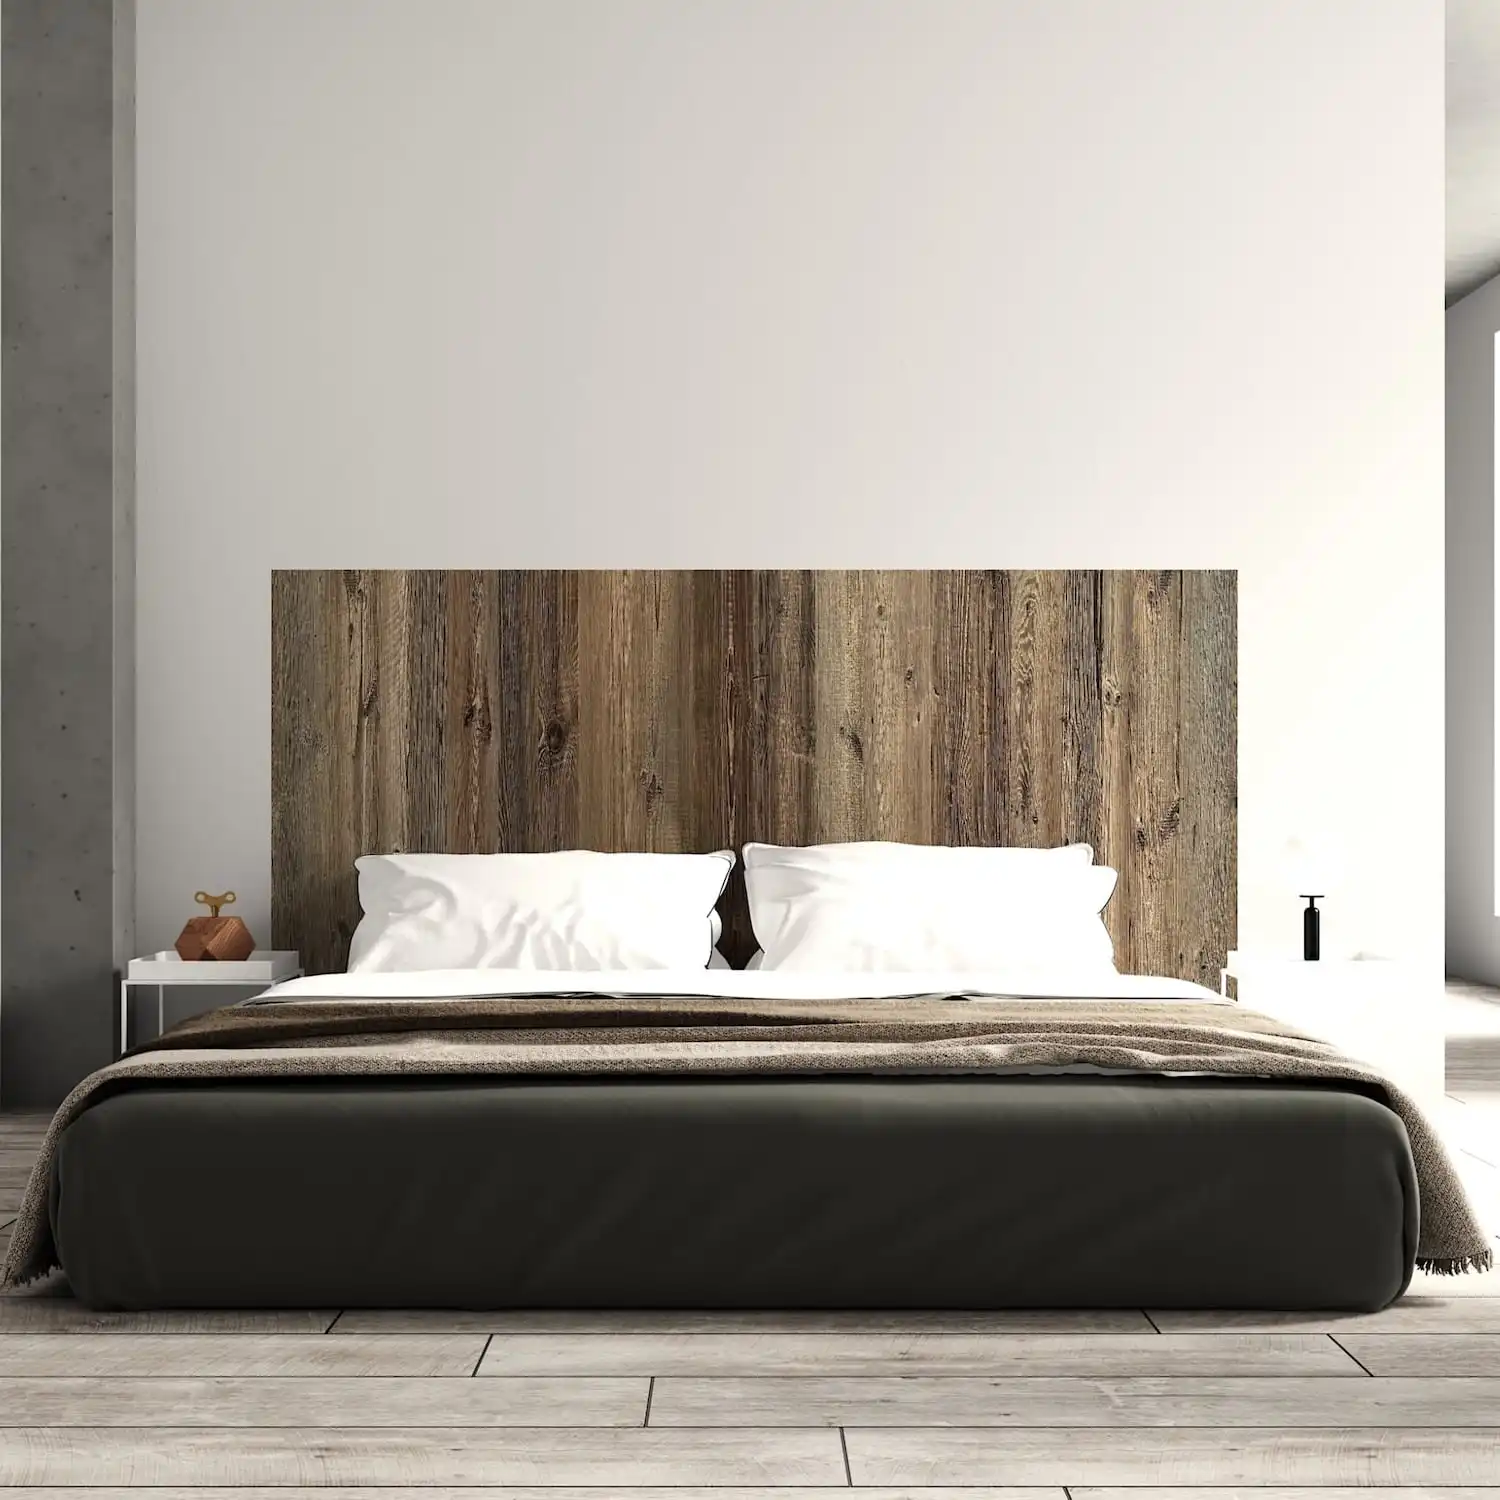  Une chambre moderne avec une grande tête de lit en bois vieilli et un lit habillé de draps blancs et marron. 